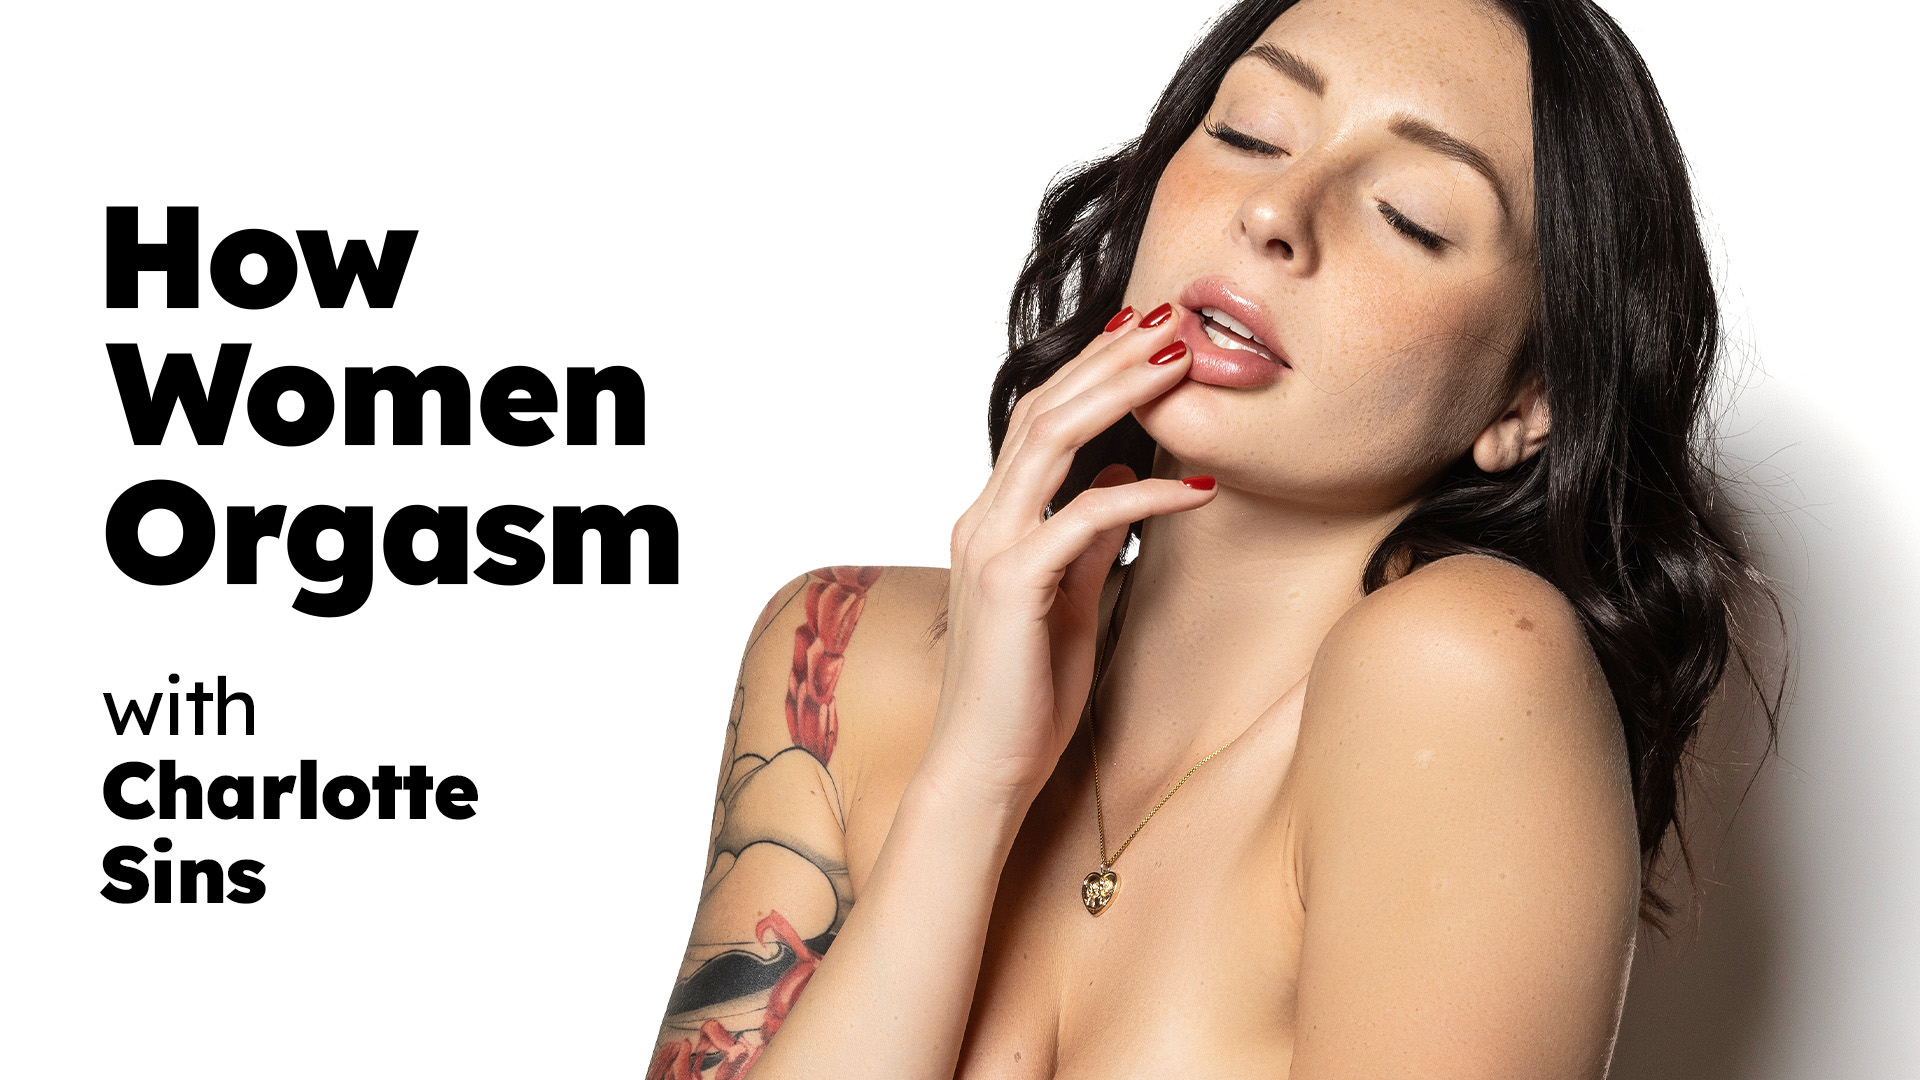 Charlotte Sins “How Women Orgasm – Charlotte Sins” HowWomenOrgasm